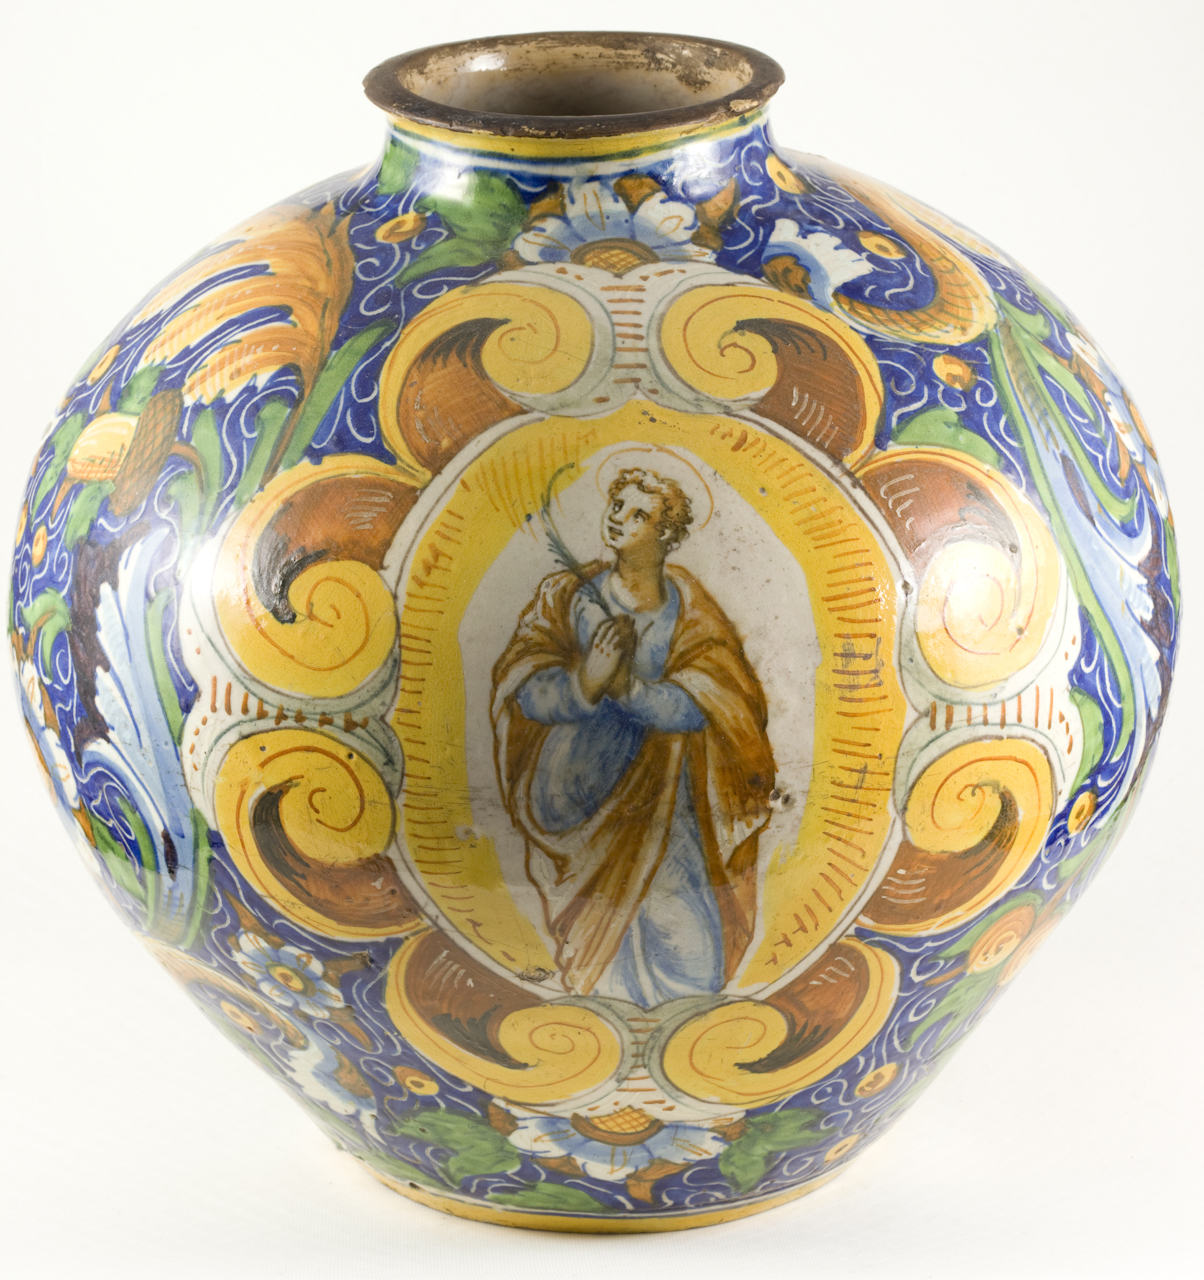 Santo martire, Santo martire, motivo decorativo a fiori e frutta (vaso a palla) - manifattura veneziana (terzo quarto sec. XVI)